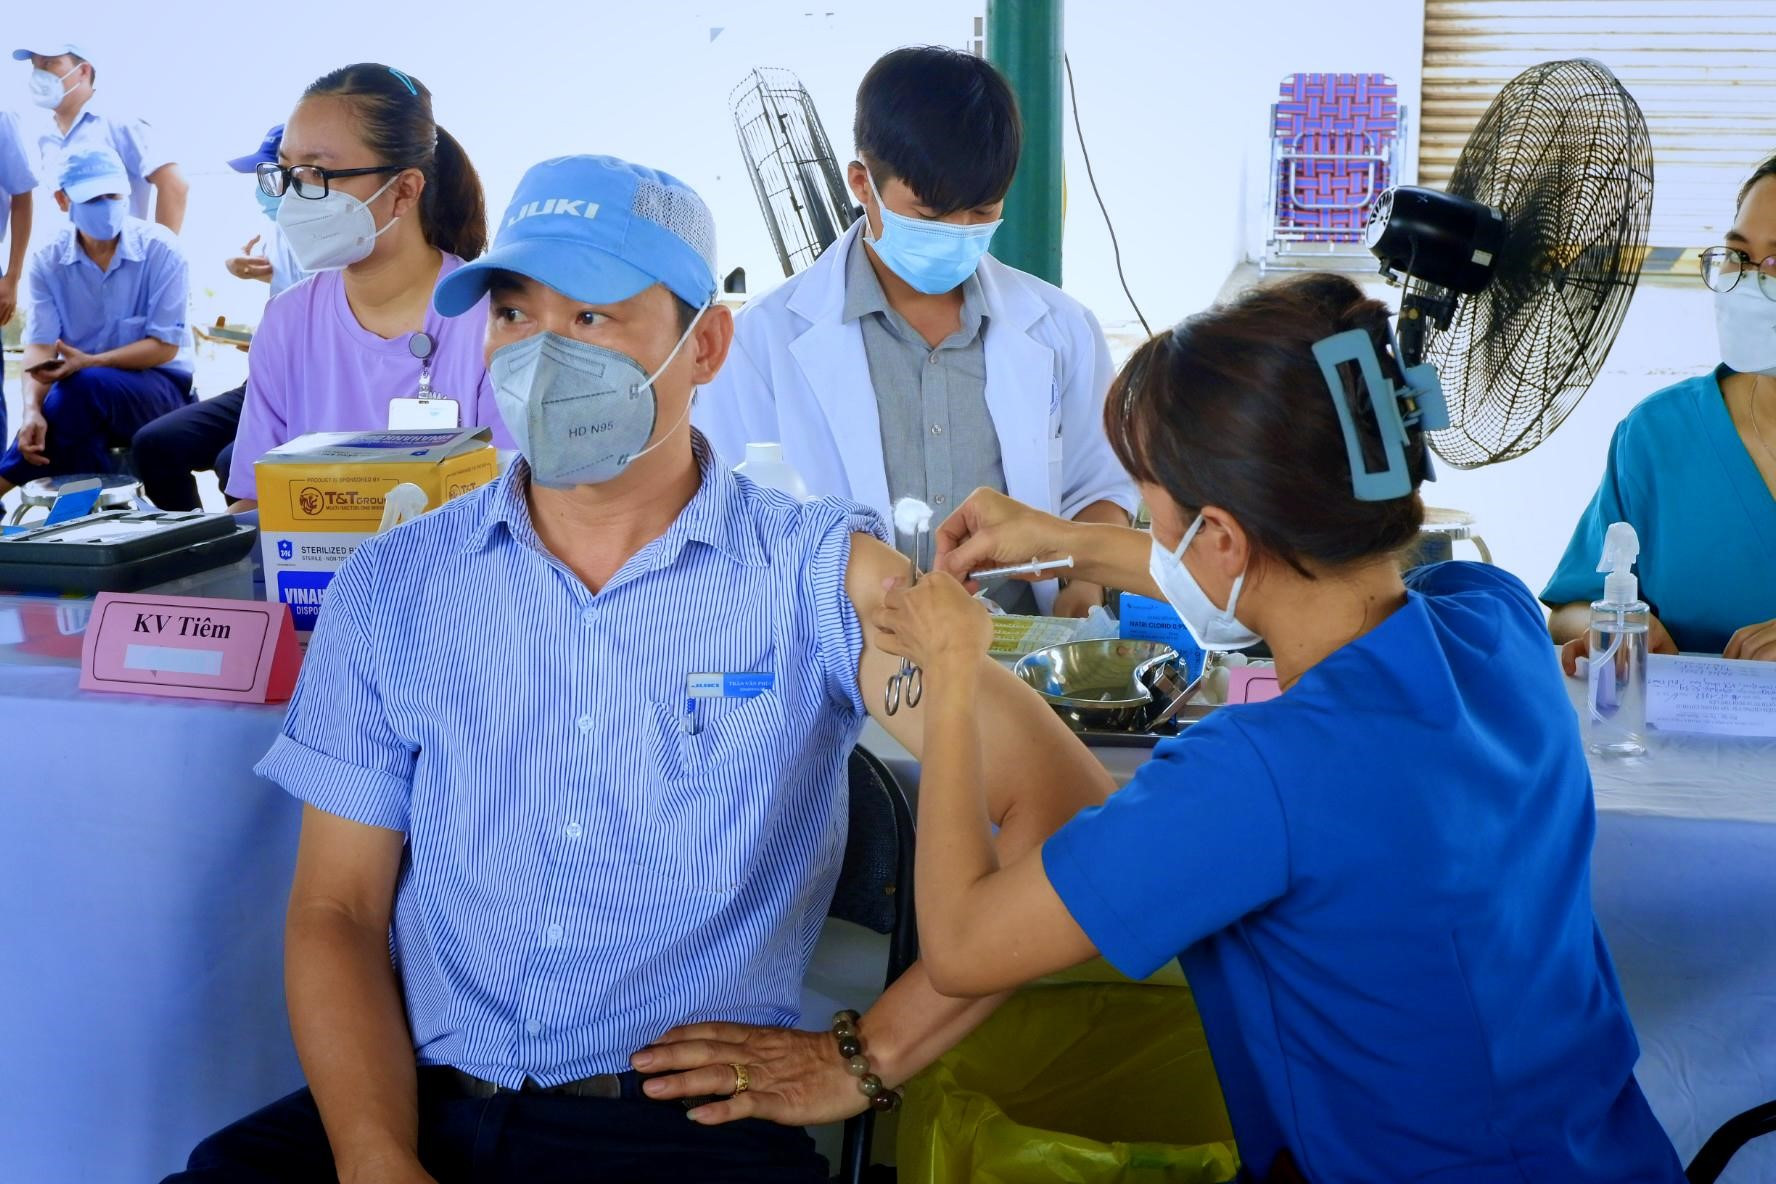 UBND tỉnh Bà Rịa - Vũng Tàu yêu cầu Ban Quản lý các khu công nghiệp tăng cường kiểm tra, giám sát, đôn đốc triển khai tiêm chủng cho công nhân, người lao động.